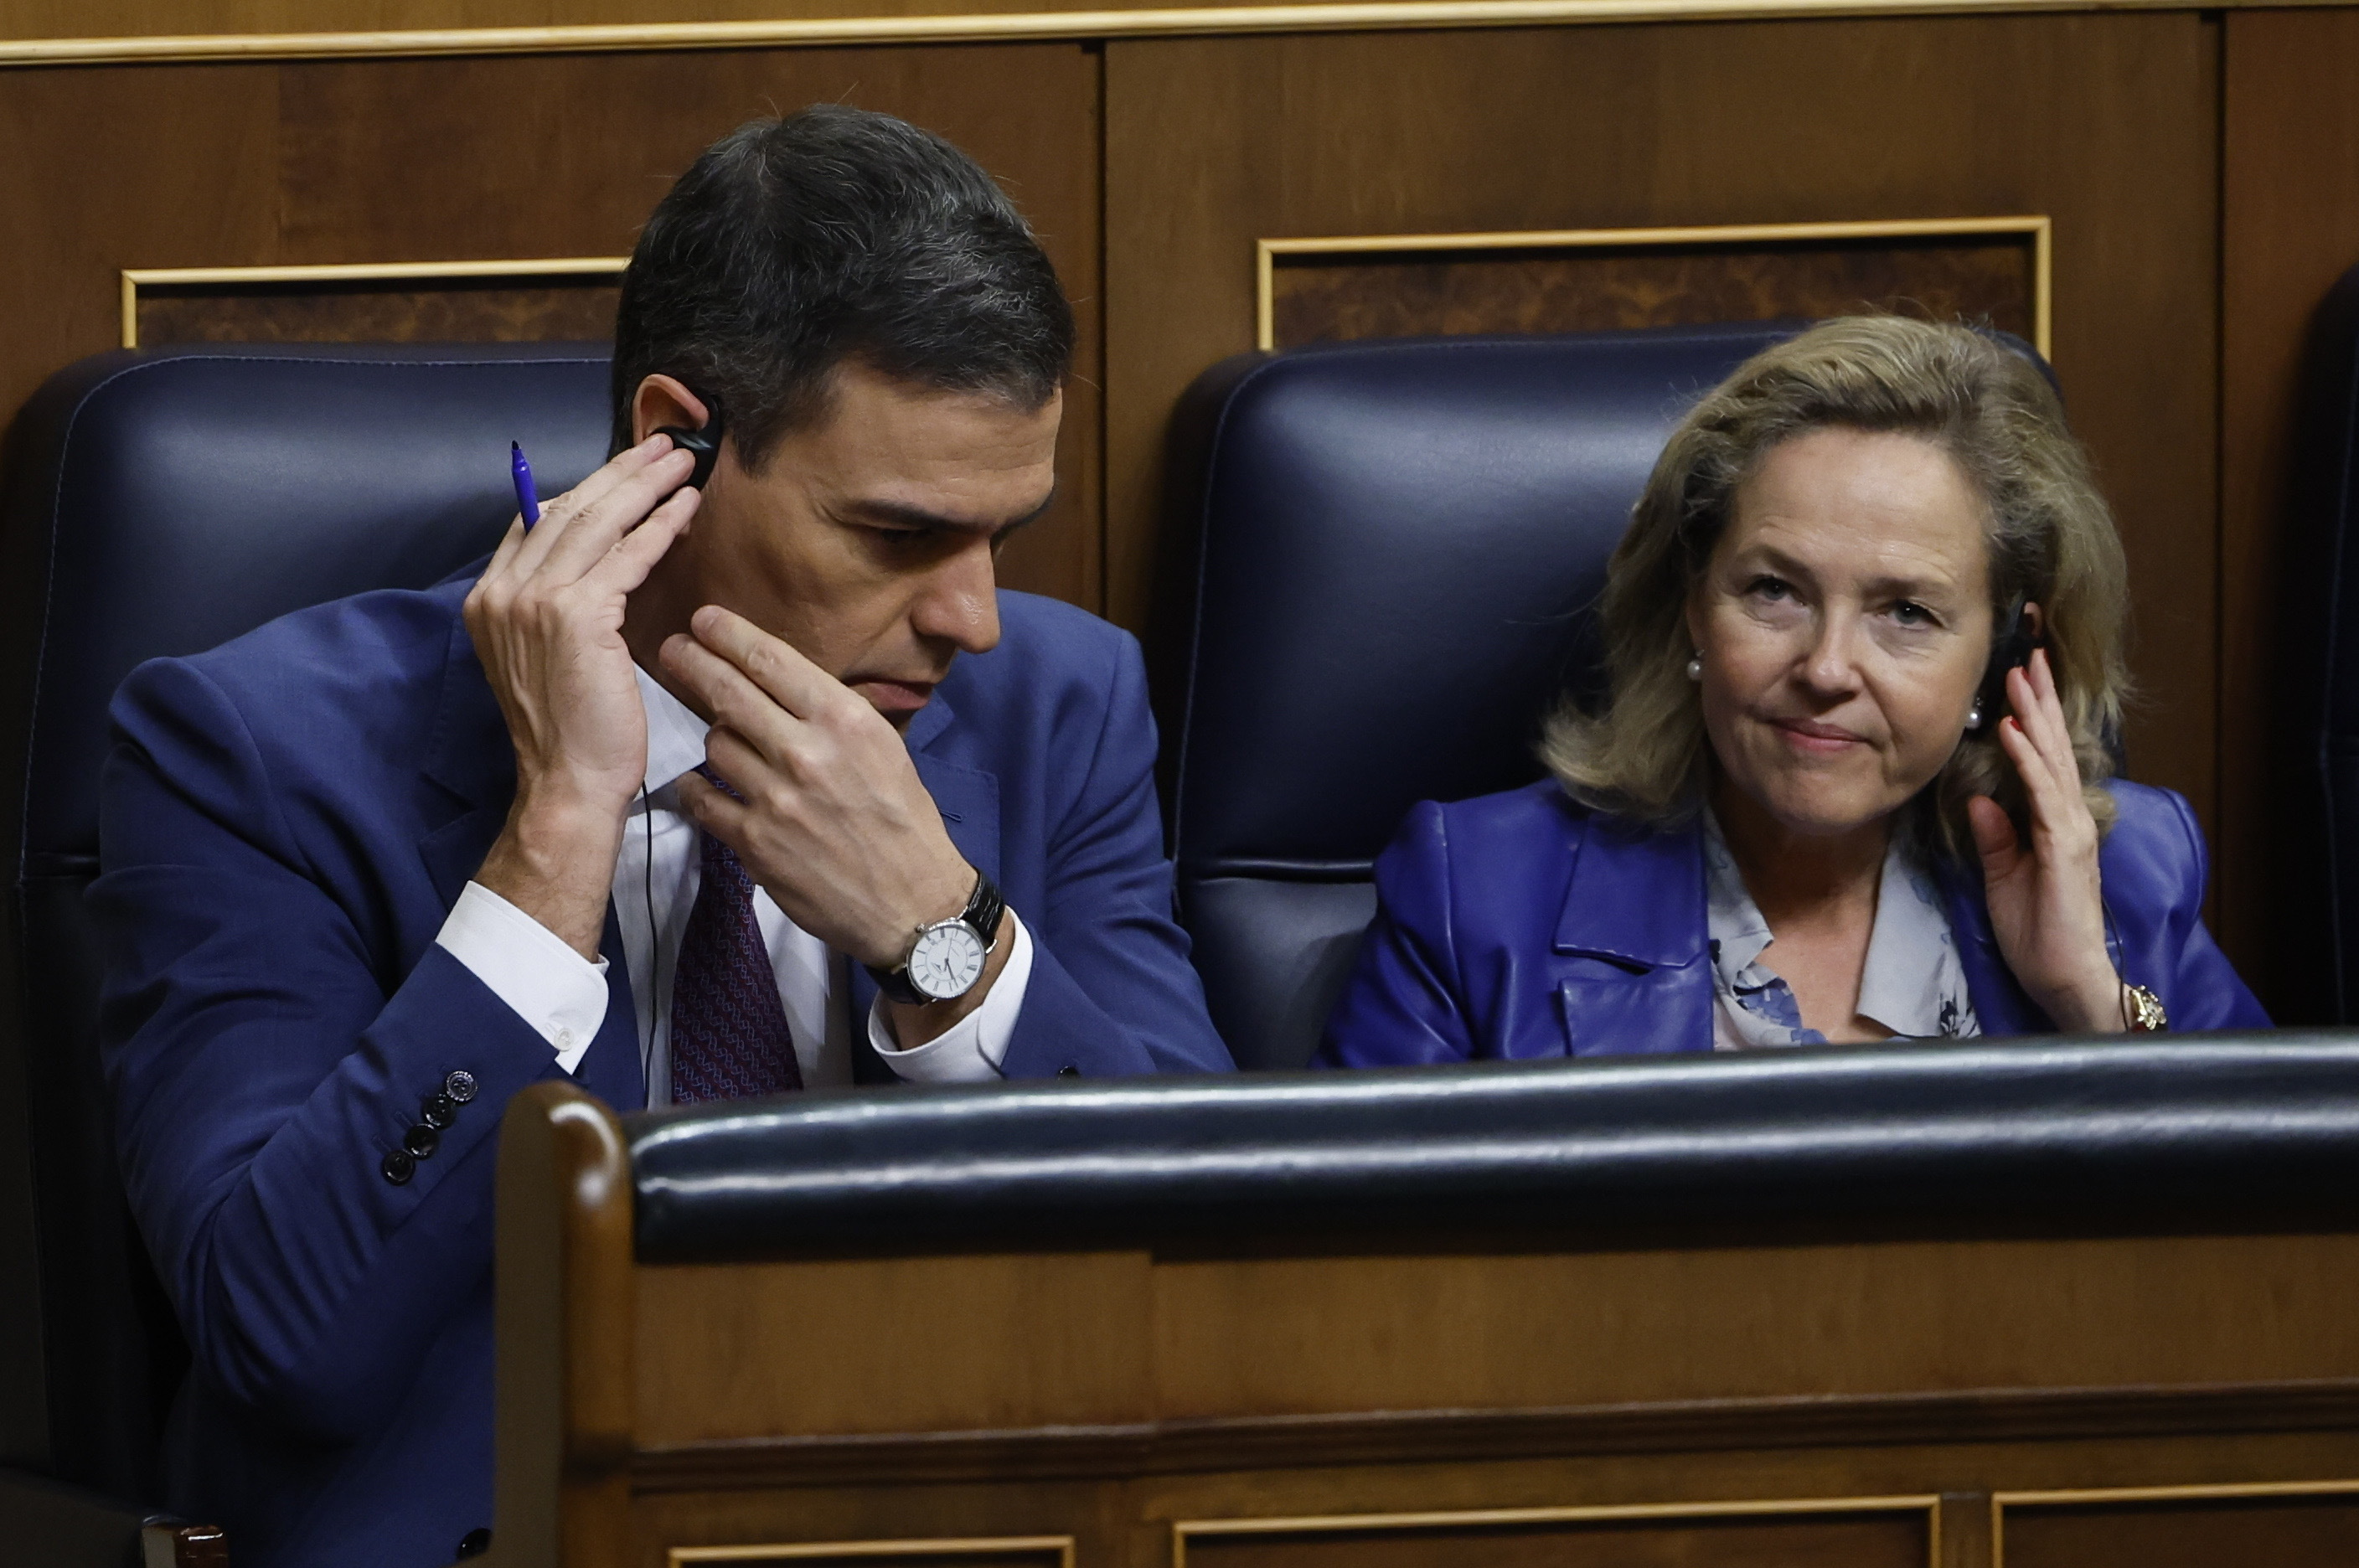 Pedro Snchez y Nadia Calvio durante una sesin en el Congreso de los Diputados